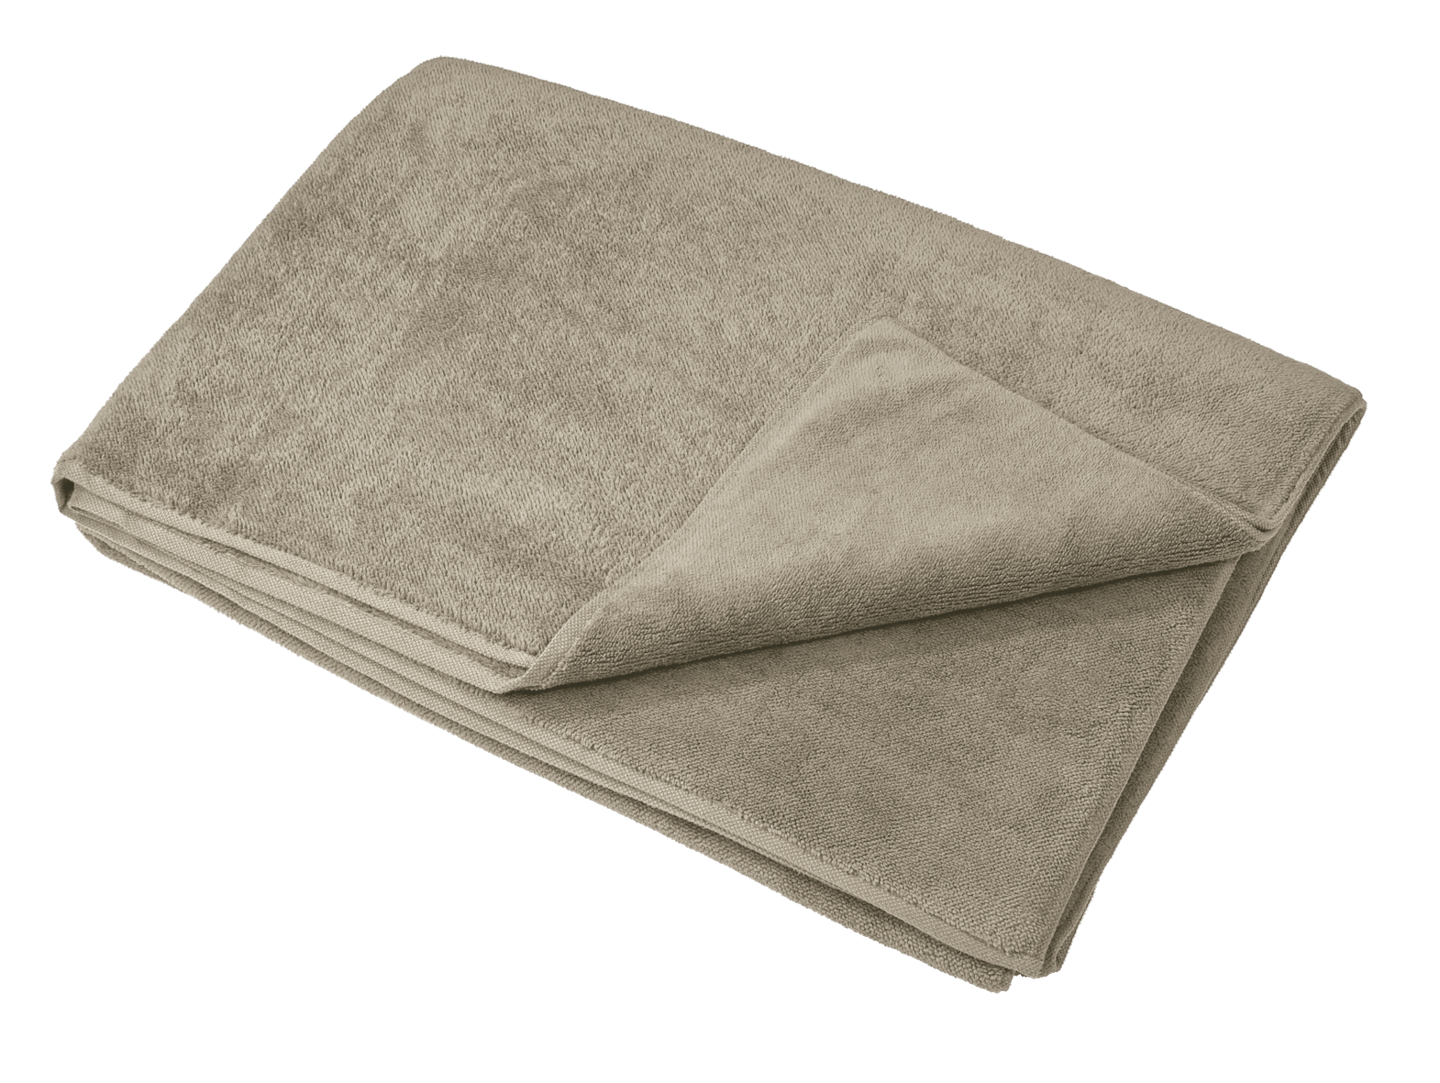 k.A. - Microfiber Blanket in sand